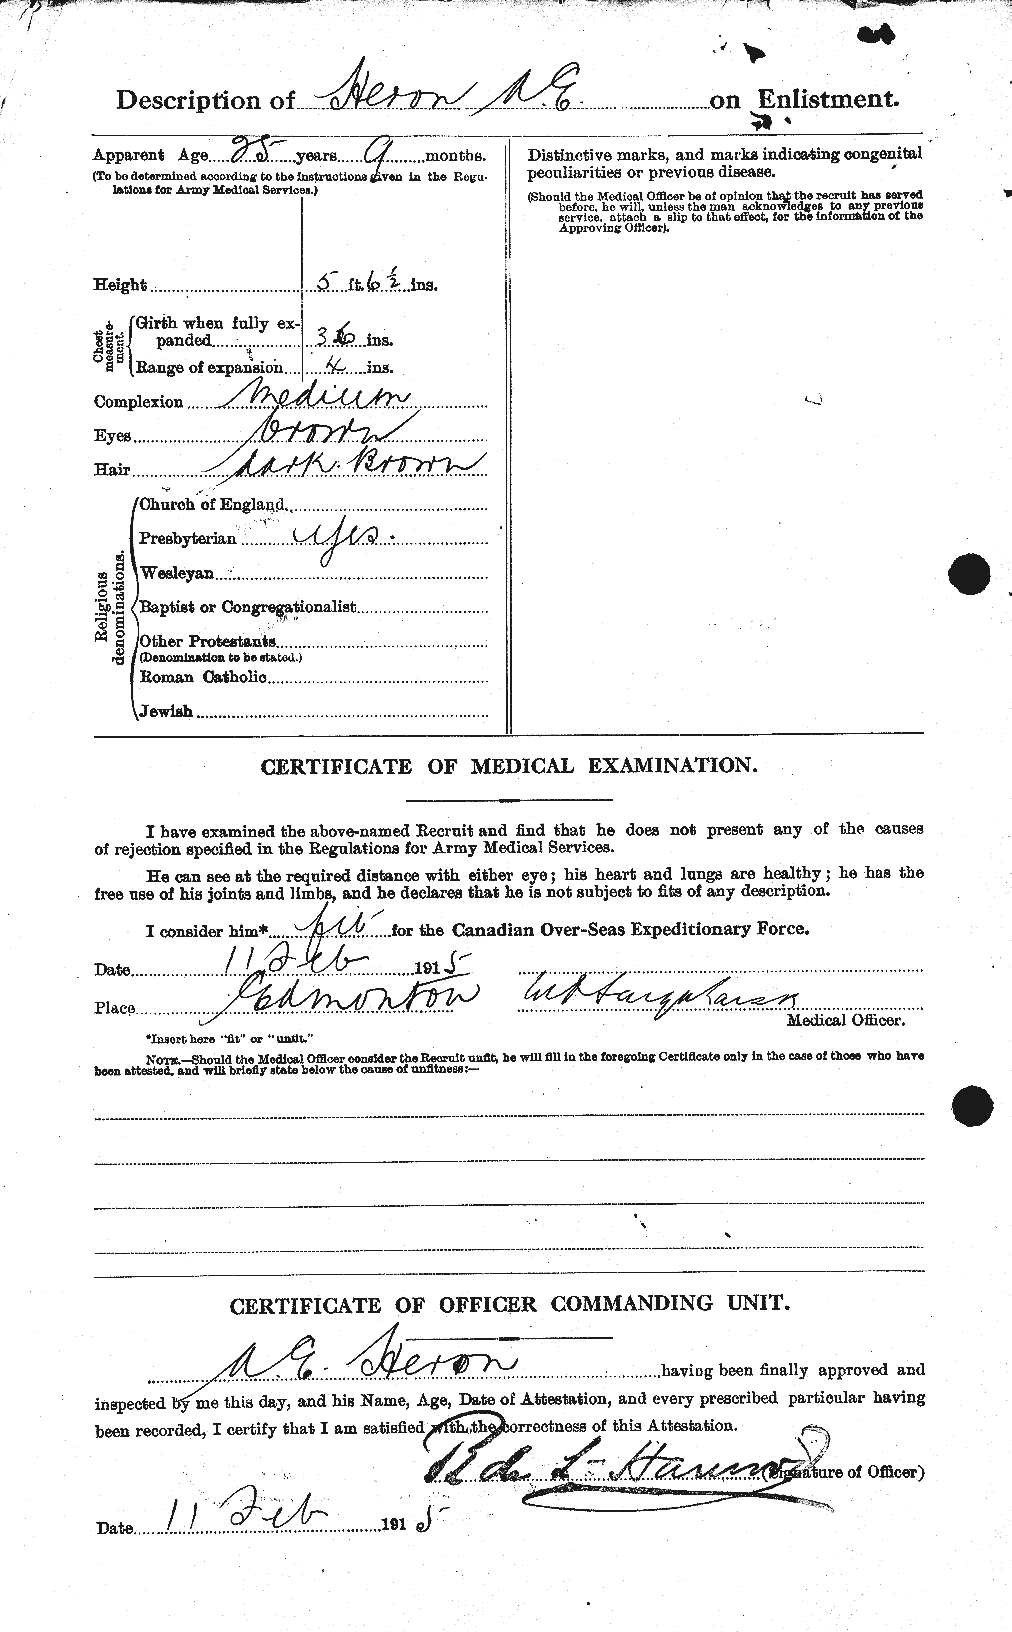 Dossiers du Personnel de la Première Guerre mondiale - CEC 388435b